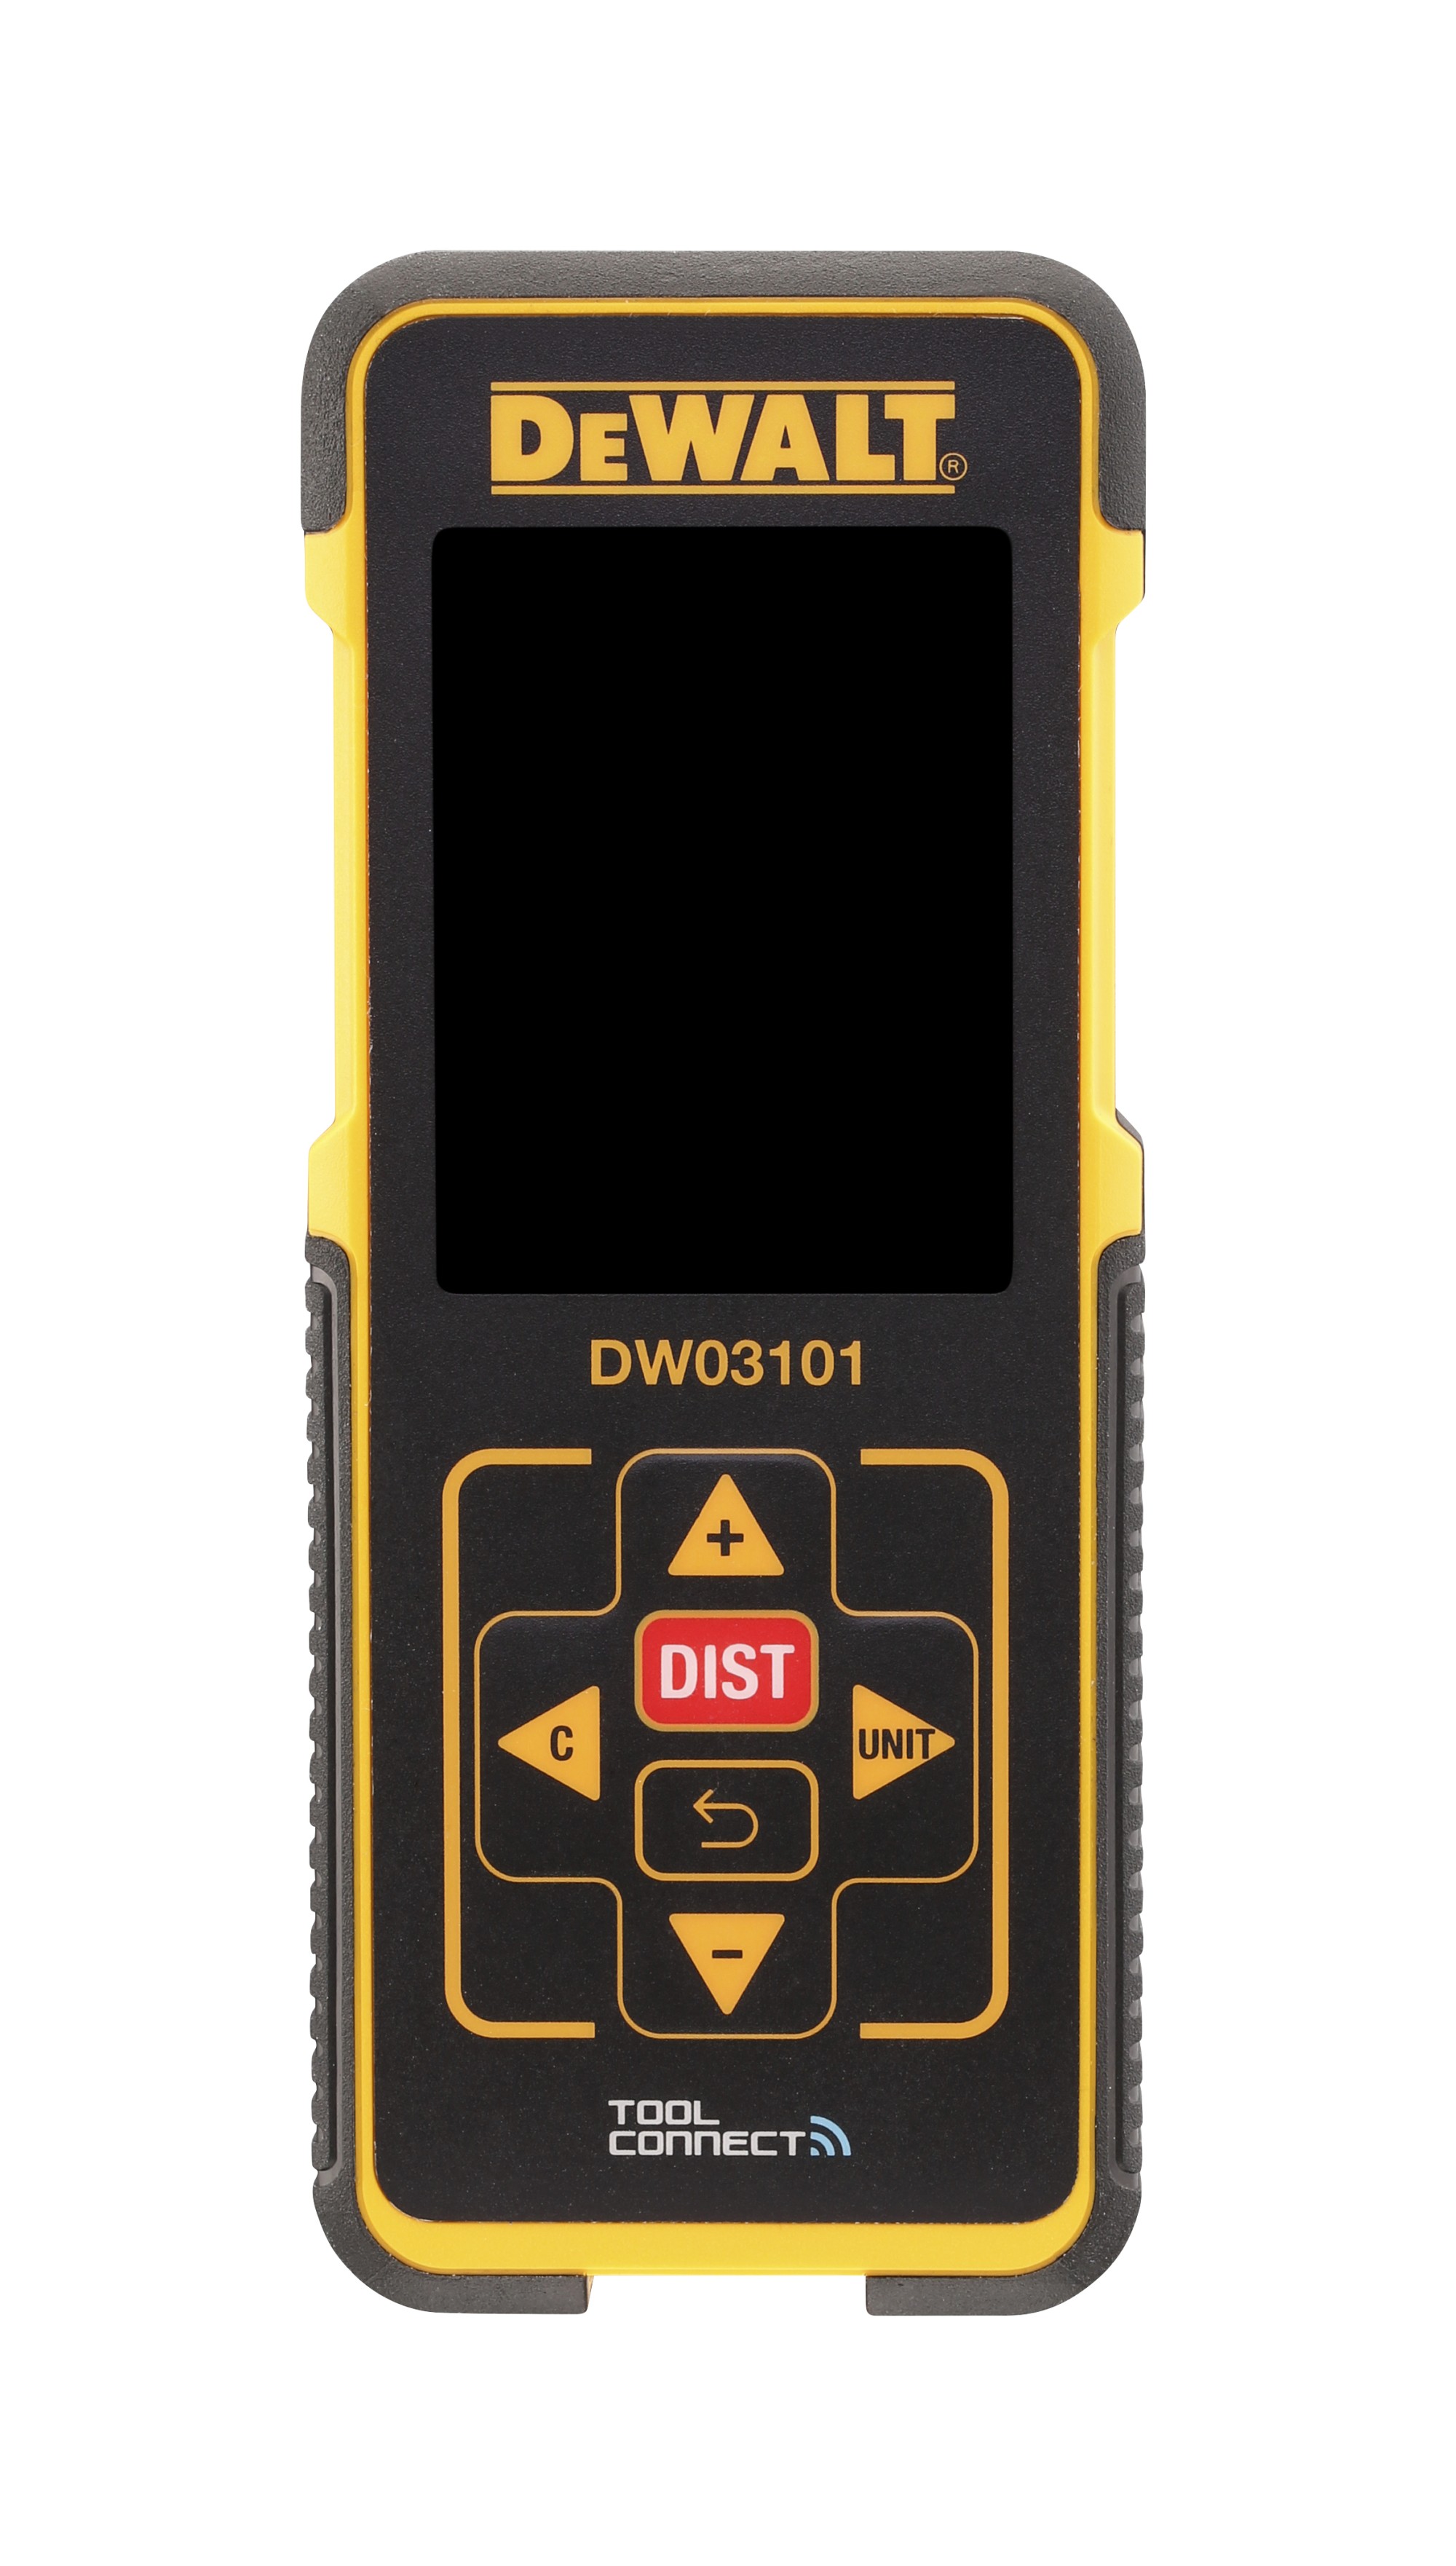 DW03101-XJ - Medidor láser de distancias con alcance de 100m DEW-DW03101-XJ | MEDIDORES DISTANCIA LASER